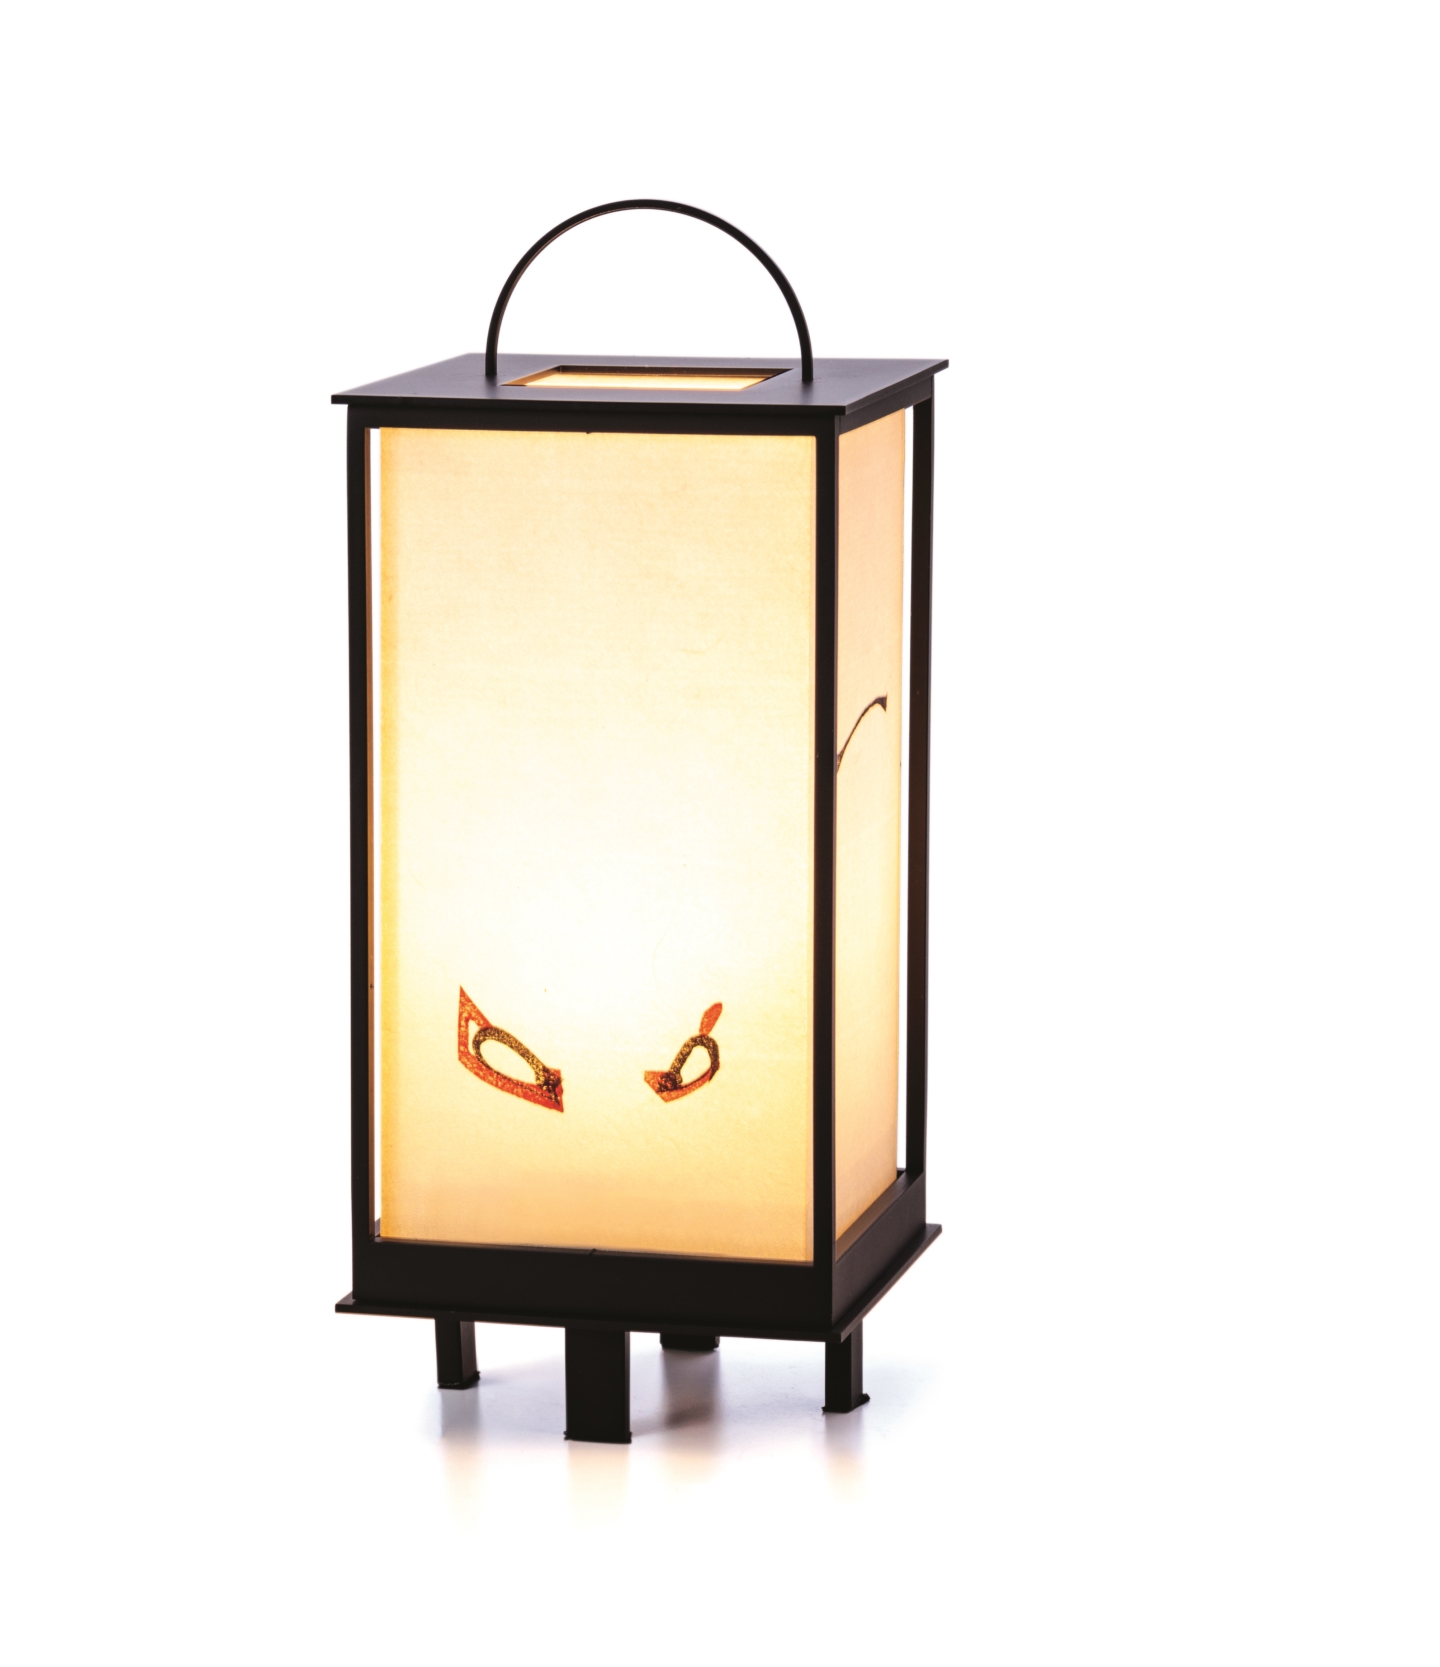 【Takahashi Kobo】 Des estampes ukiyo-e flottant dans le doux halo de lanternes traditionnelles andon